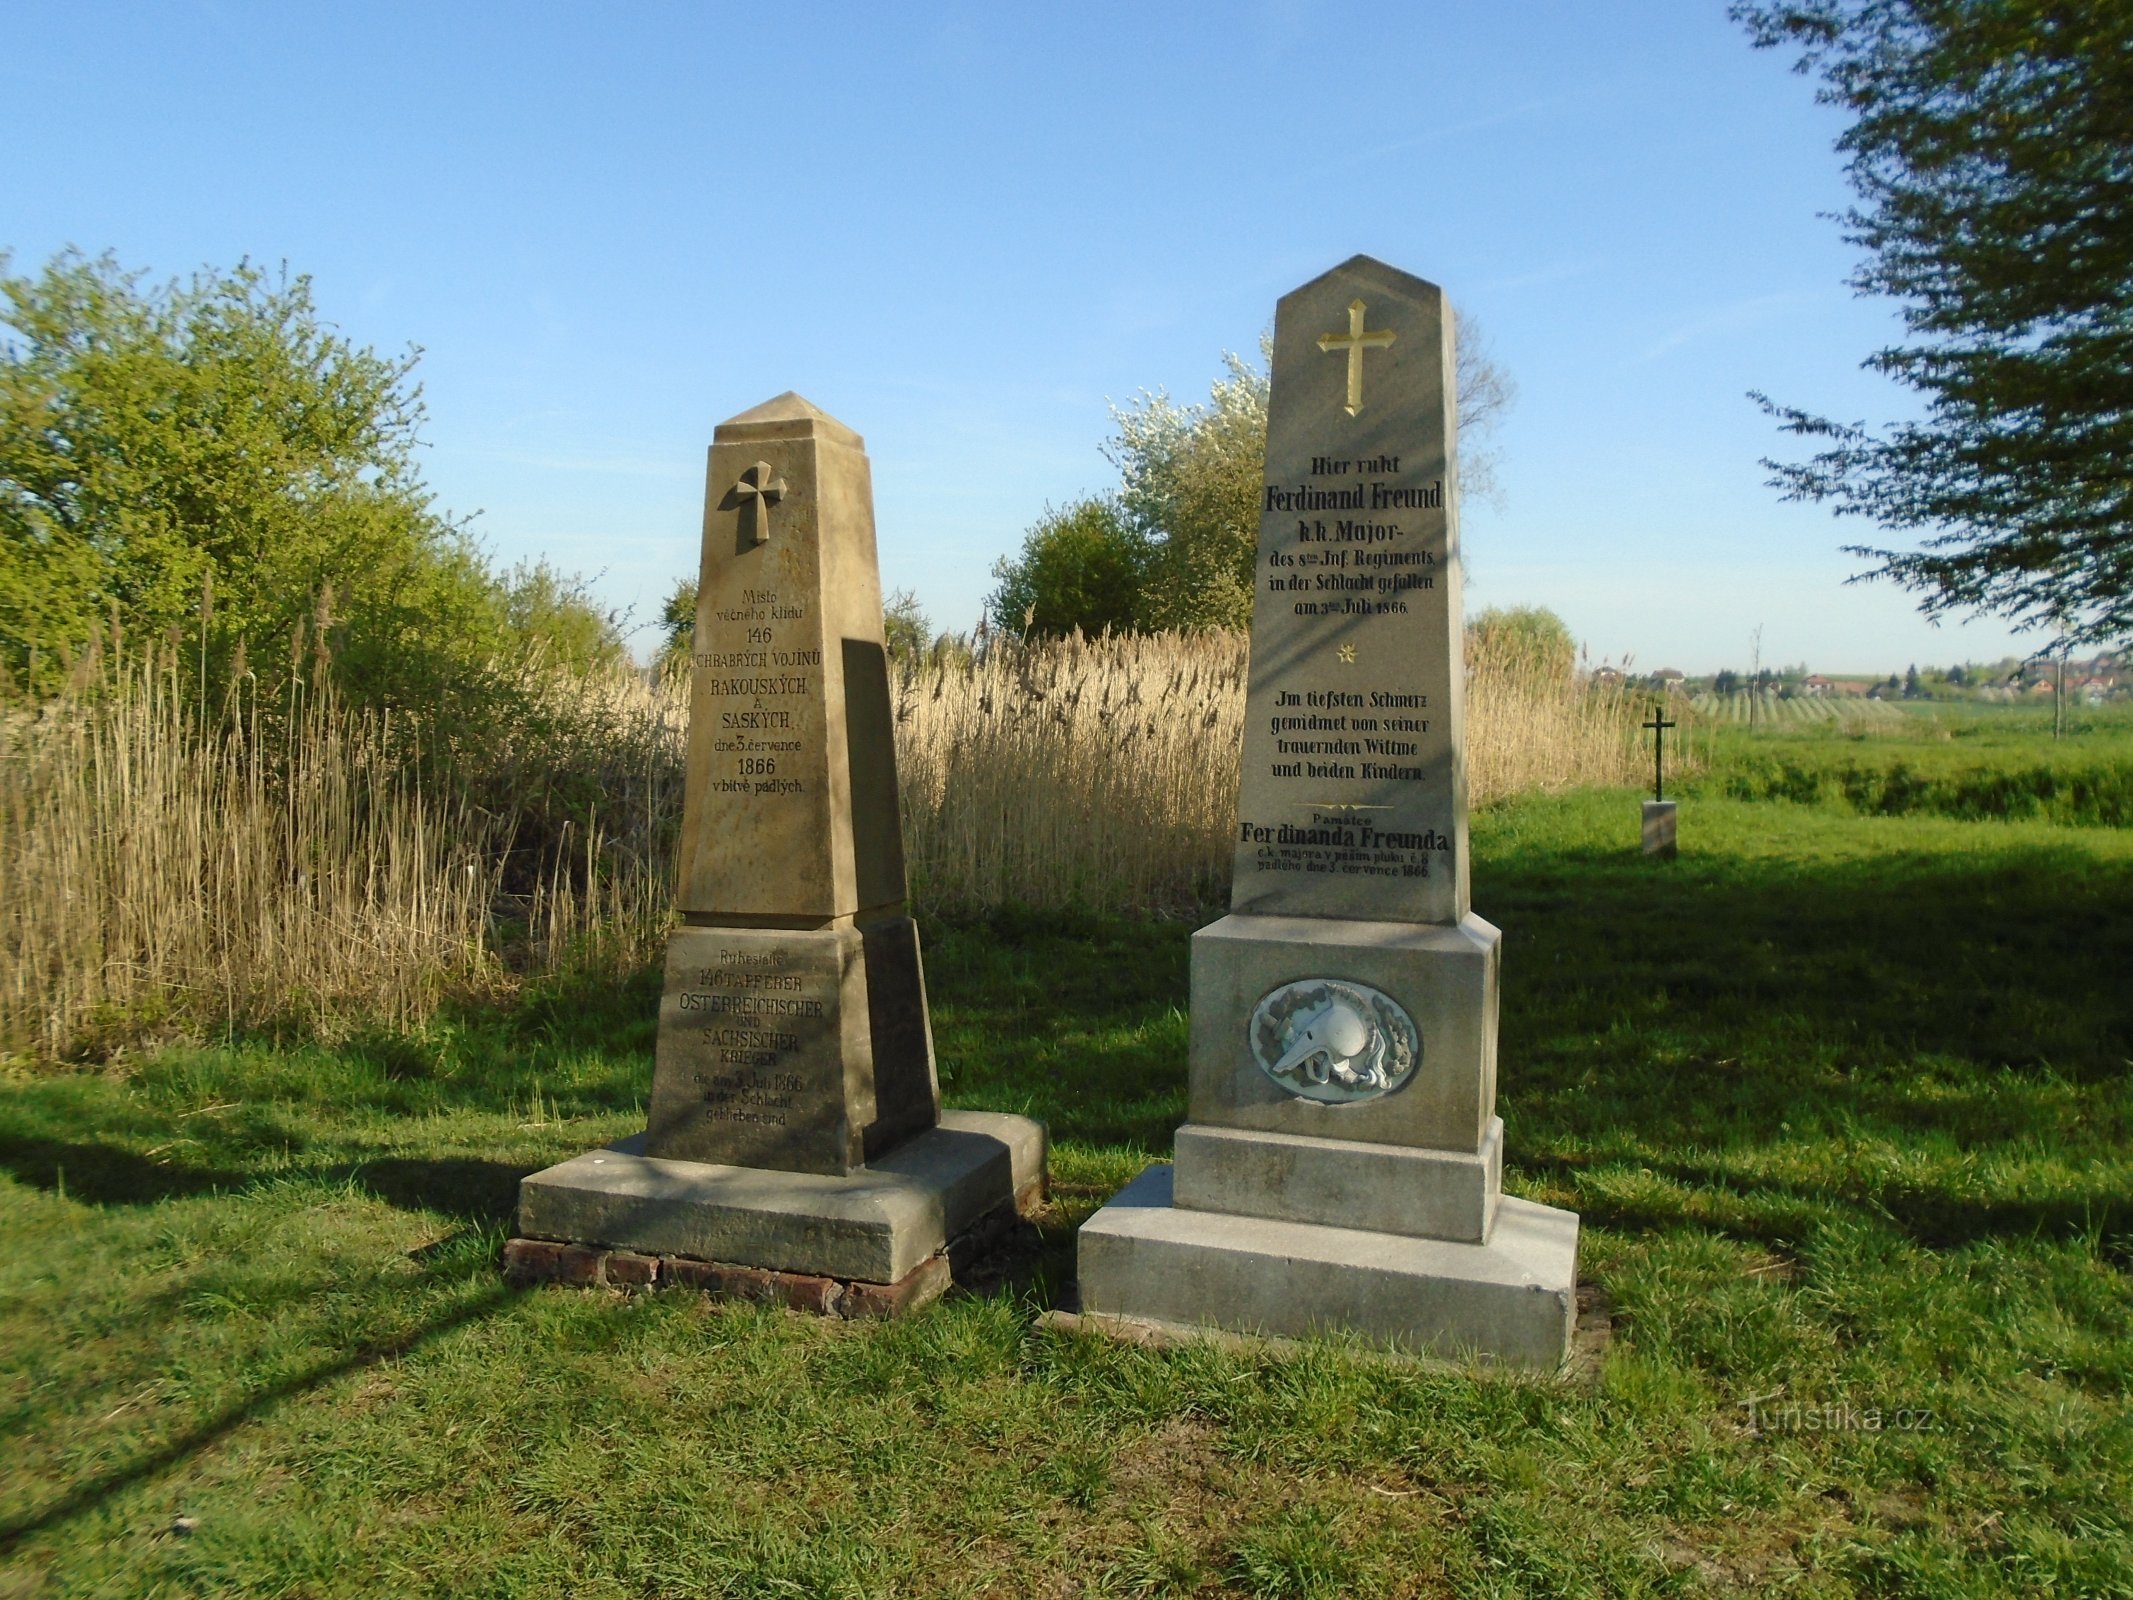 Monumenti a coloro che morirono nella guerra prussiano-austriaca del 1866 a St. Aloisia (prim superiore)